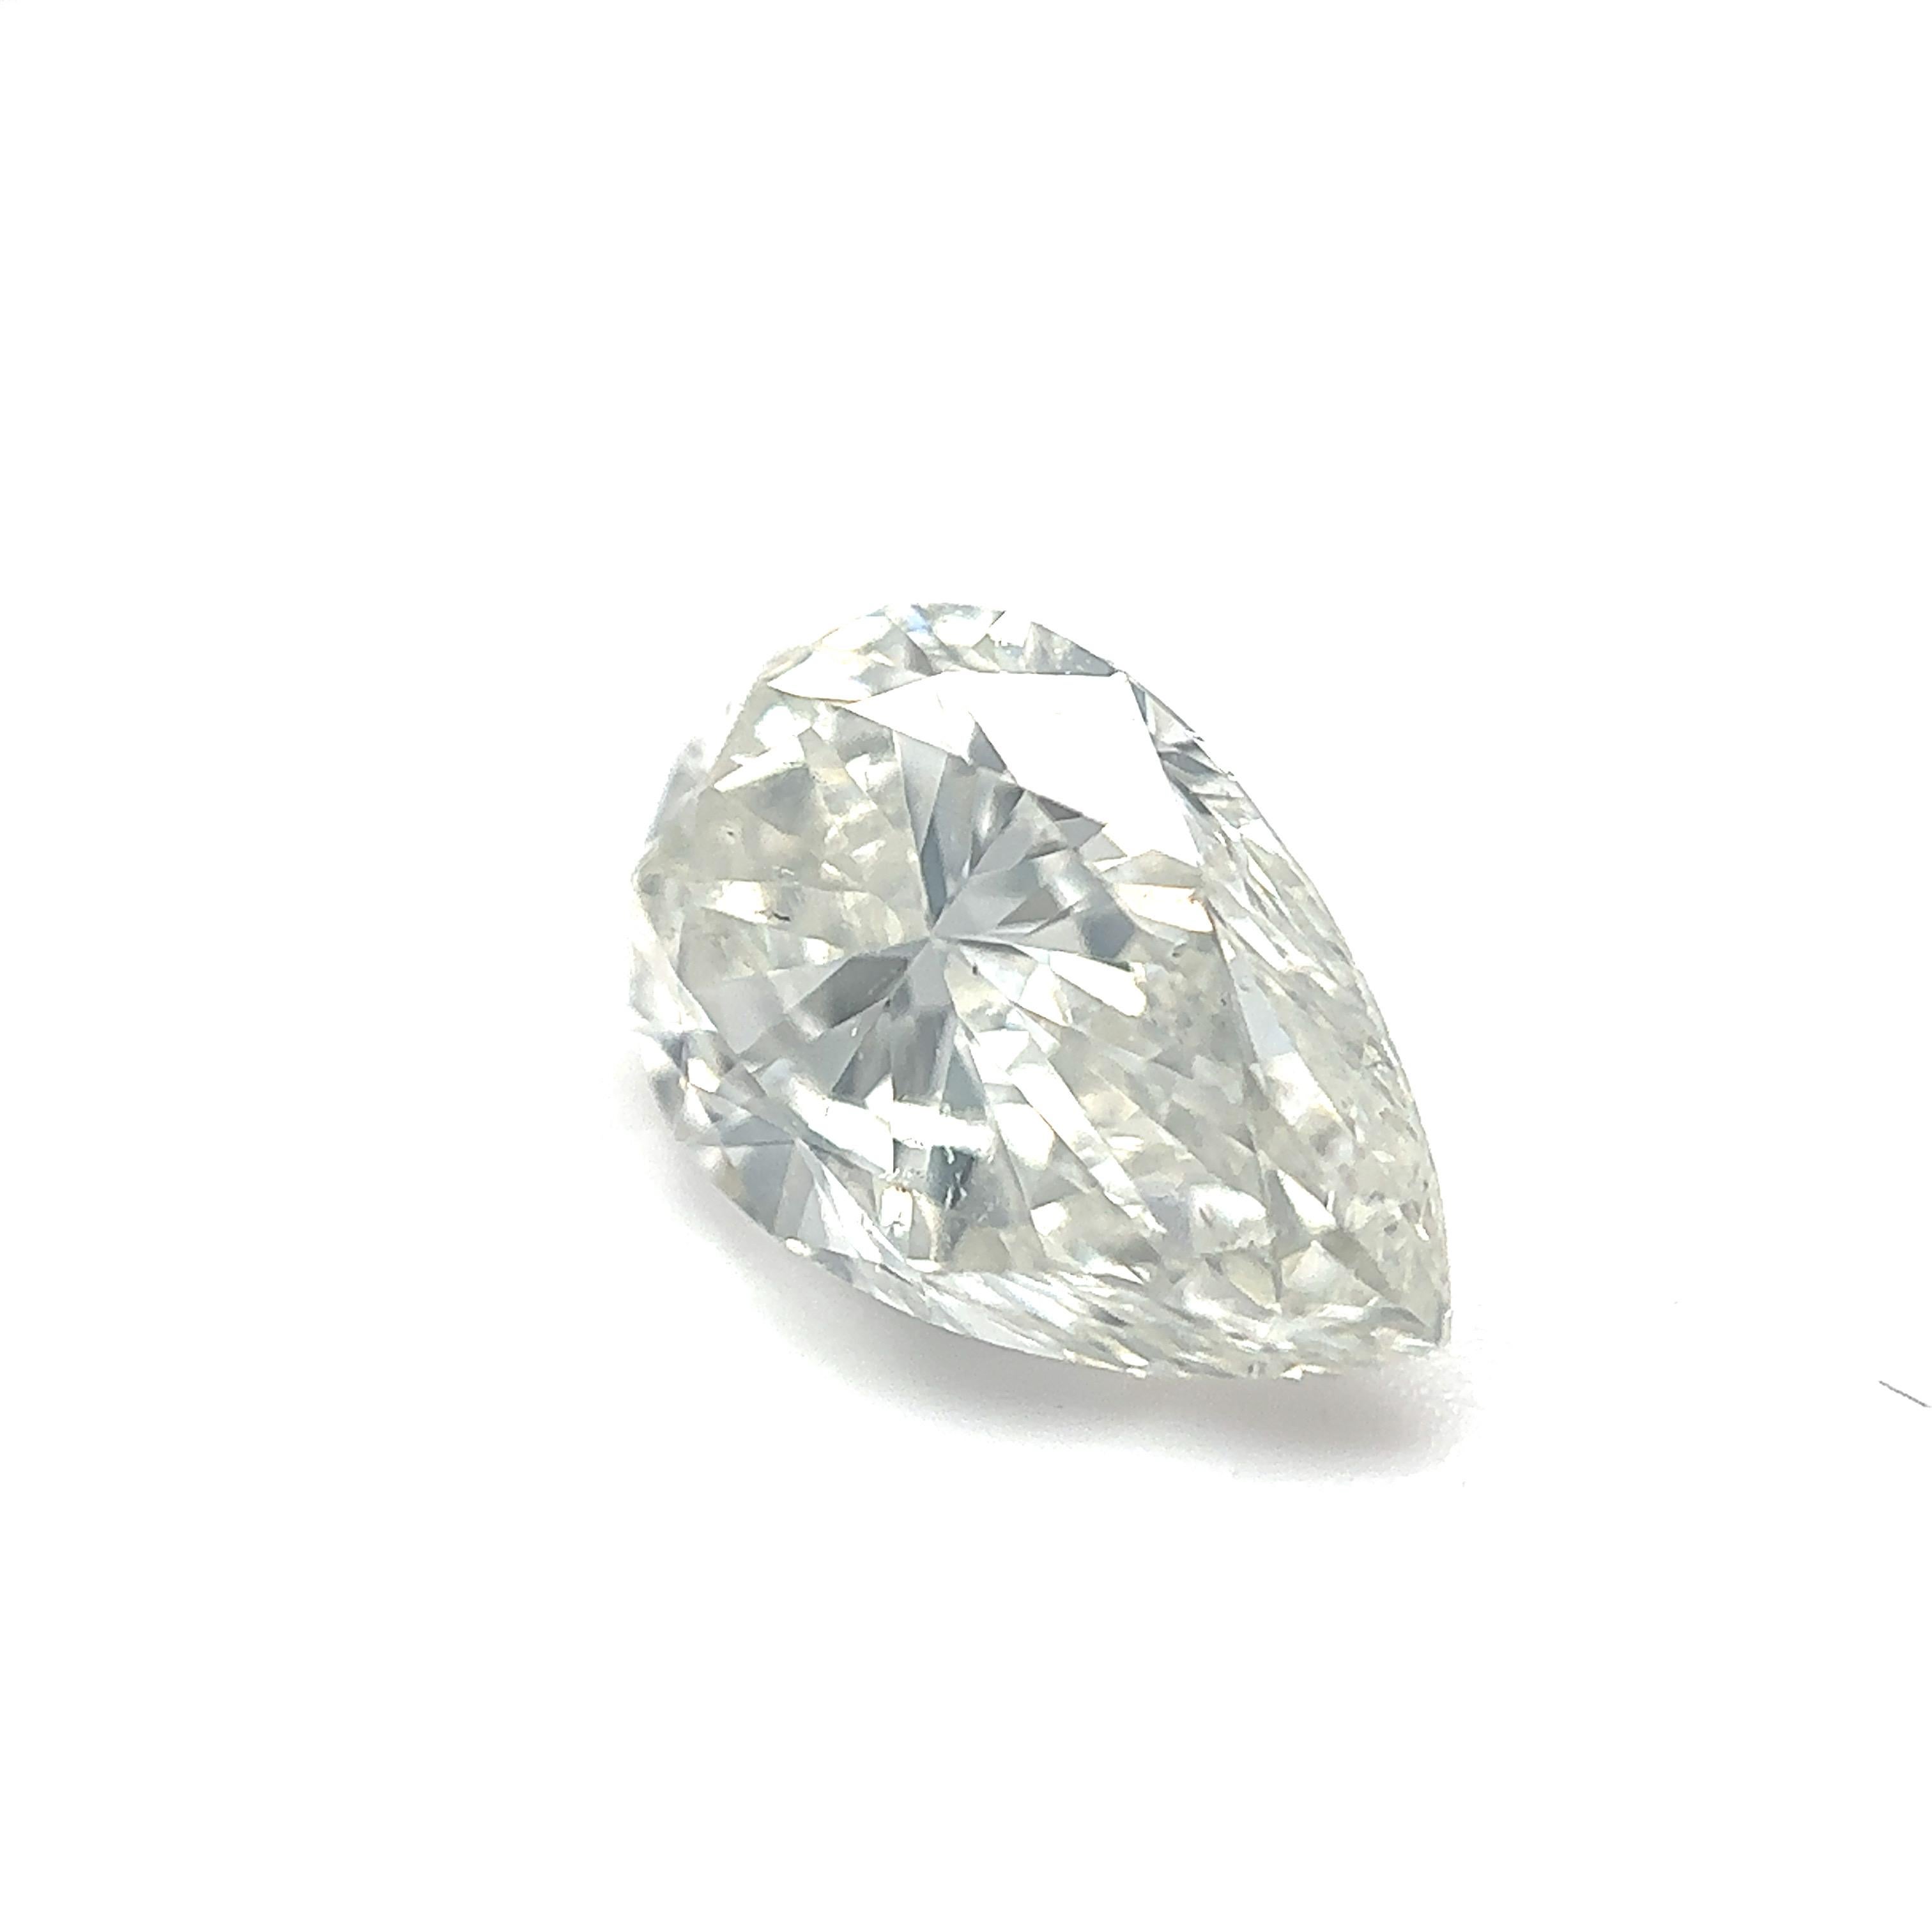 GIA-zertifizierter 1,70-Karat-Birnenbrillant-Naturdiamant Lose Stein (Anpassungsoption)

Farbe: H
Klarheit: SI2

Ideal für Verlobungsringe, Eheringe, Diamant-Halsketten und Diamant-Ohrringe. Setzen Sie sich mit uns in Verbindung, um Ihren Schmuck zu